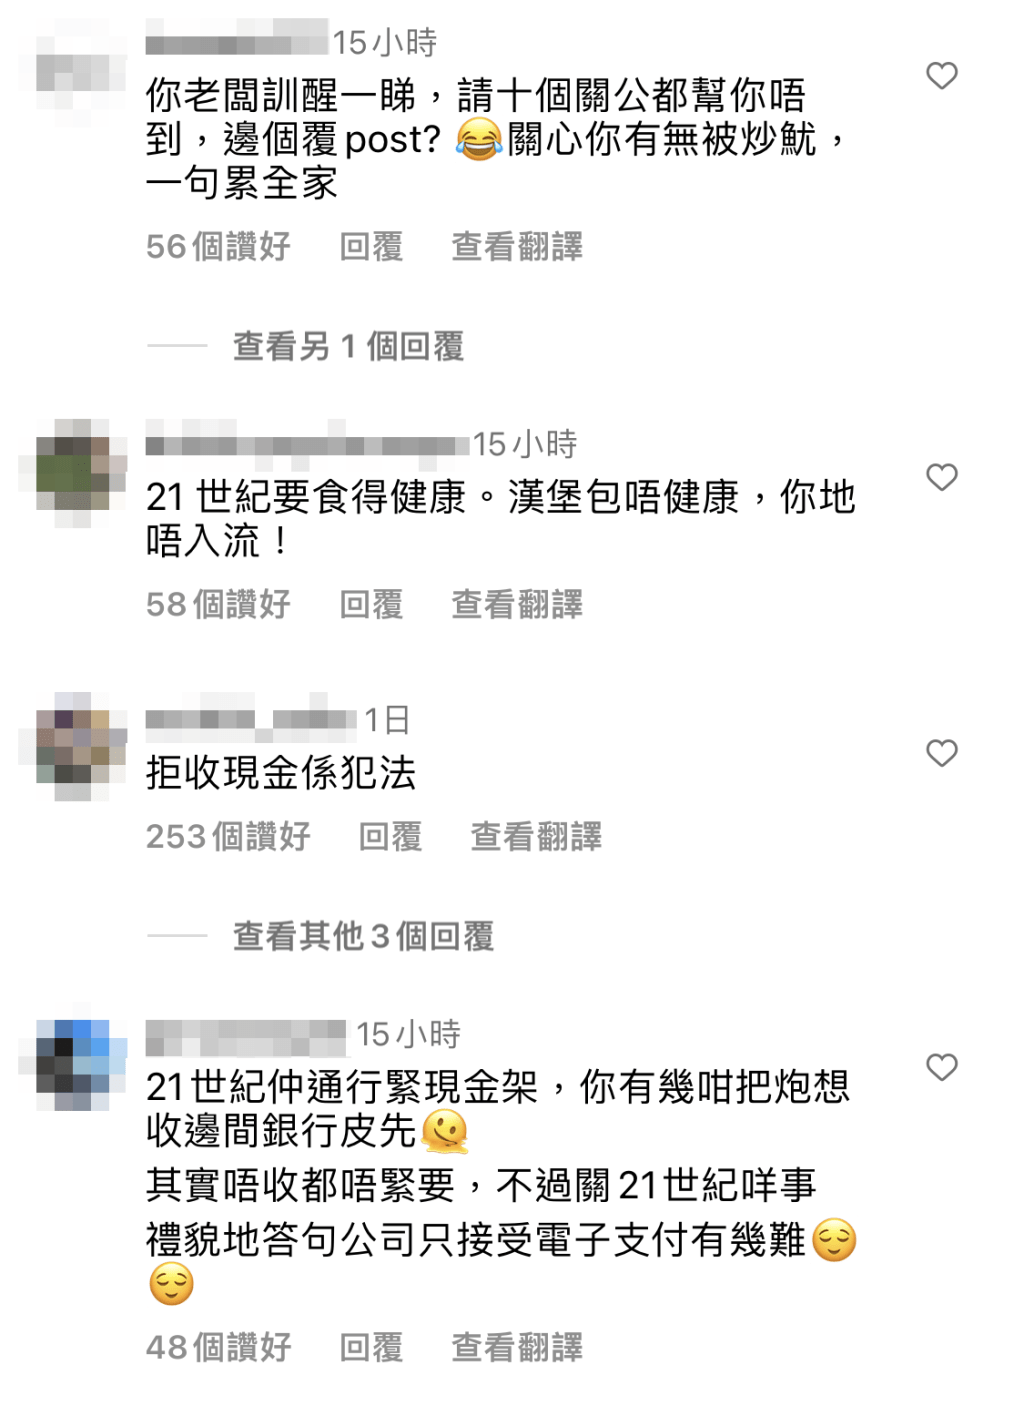 有網民指拒收現金是違法行為，其實香港並無法例禁止商店拒收現金。